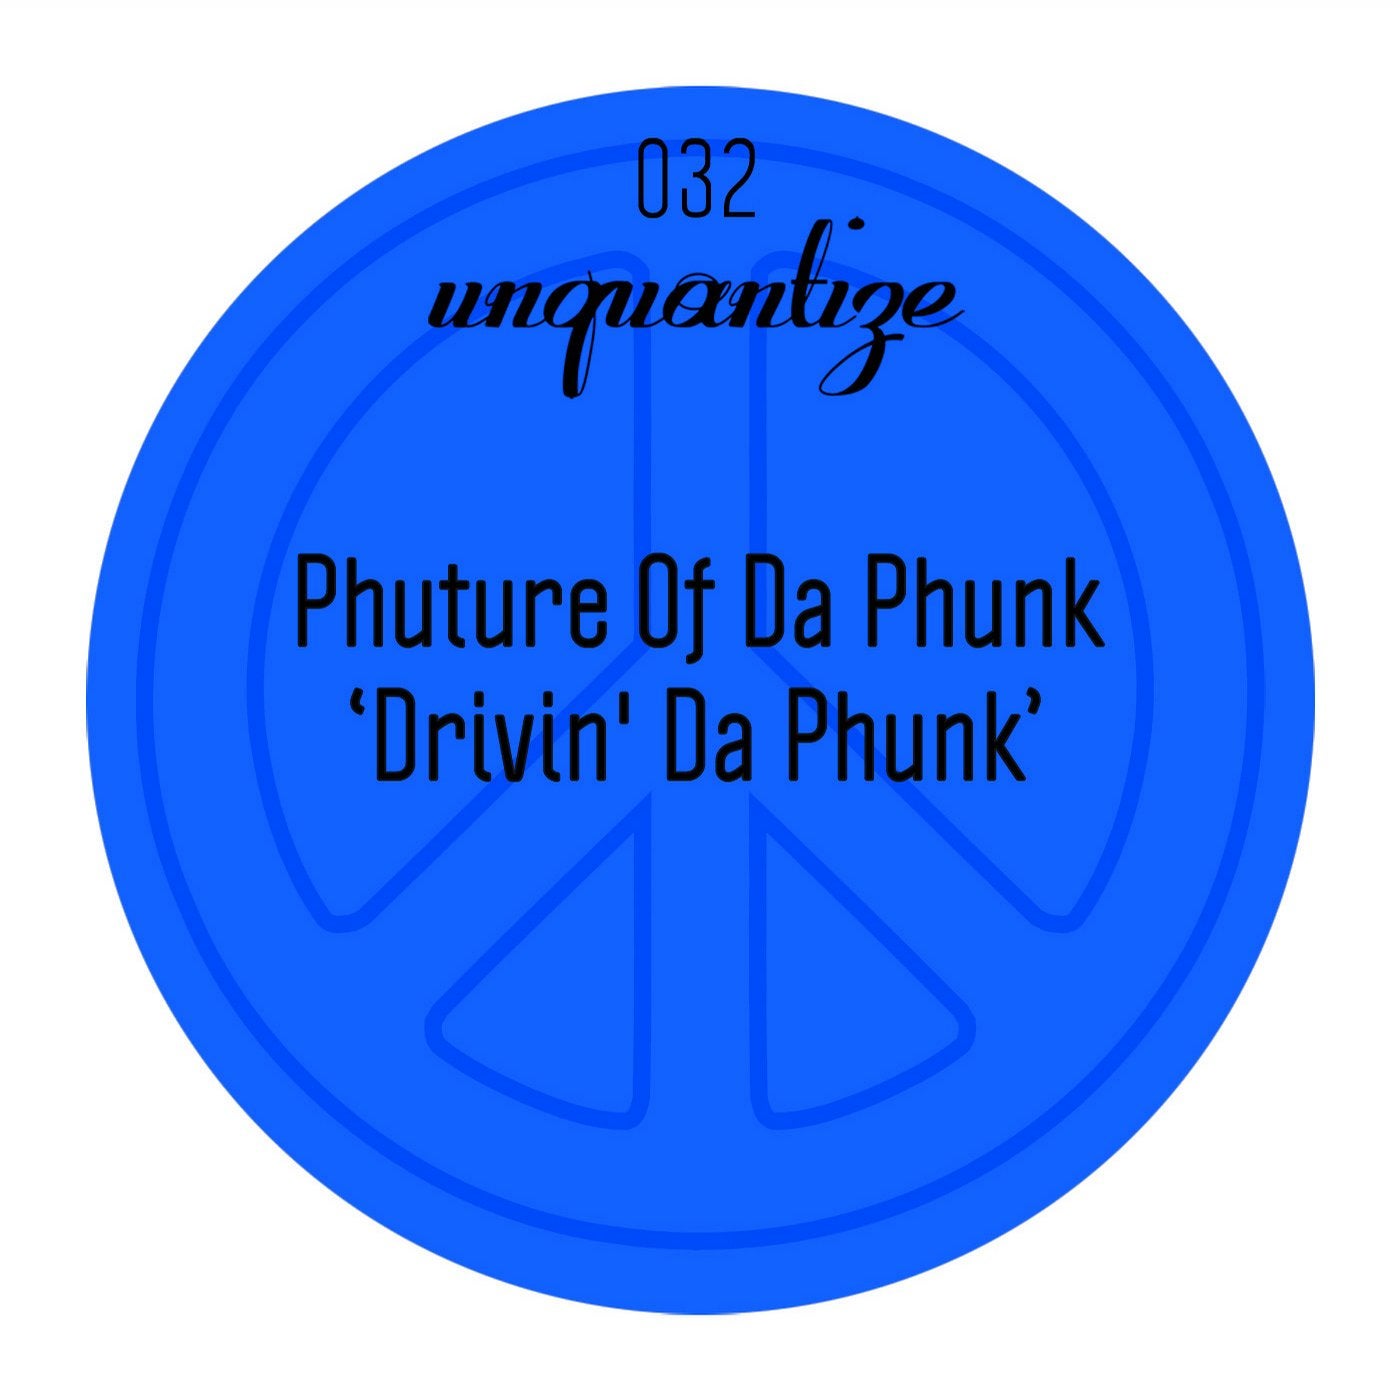 Drivin' Da Phunk